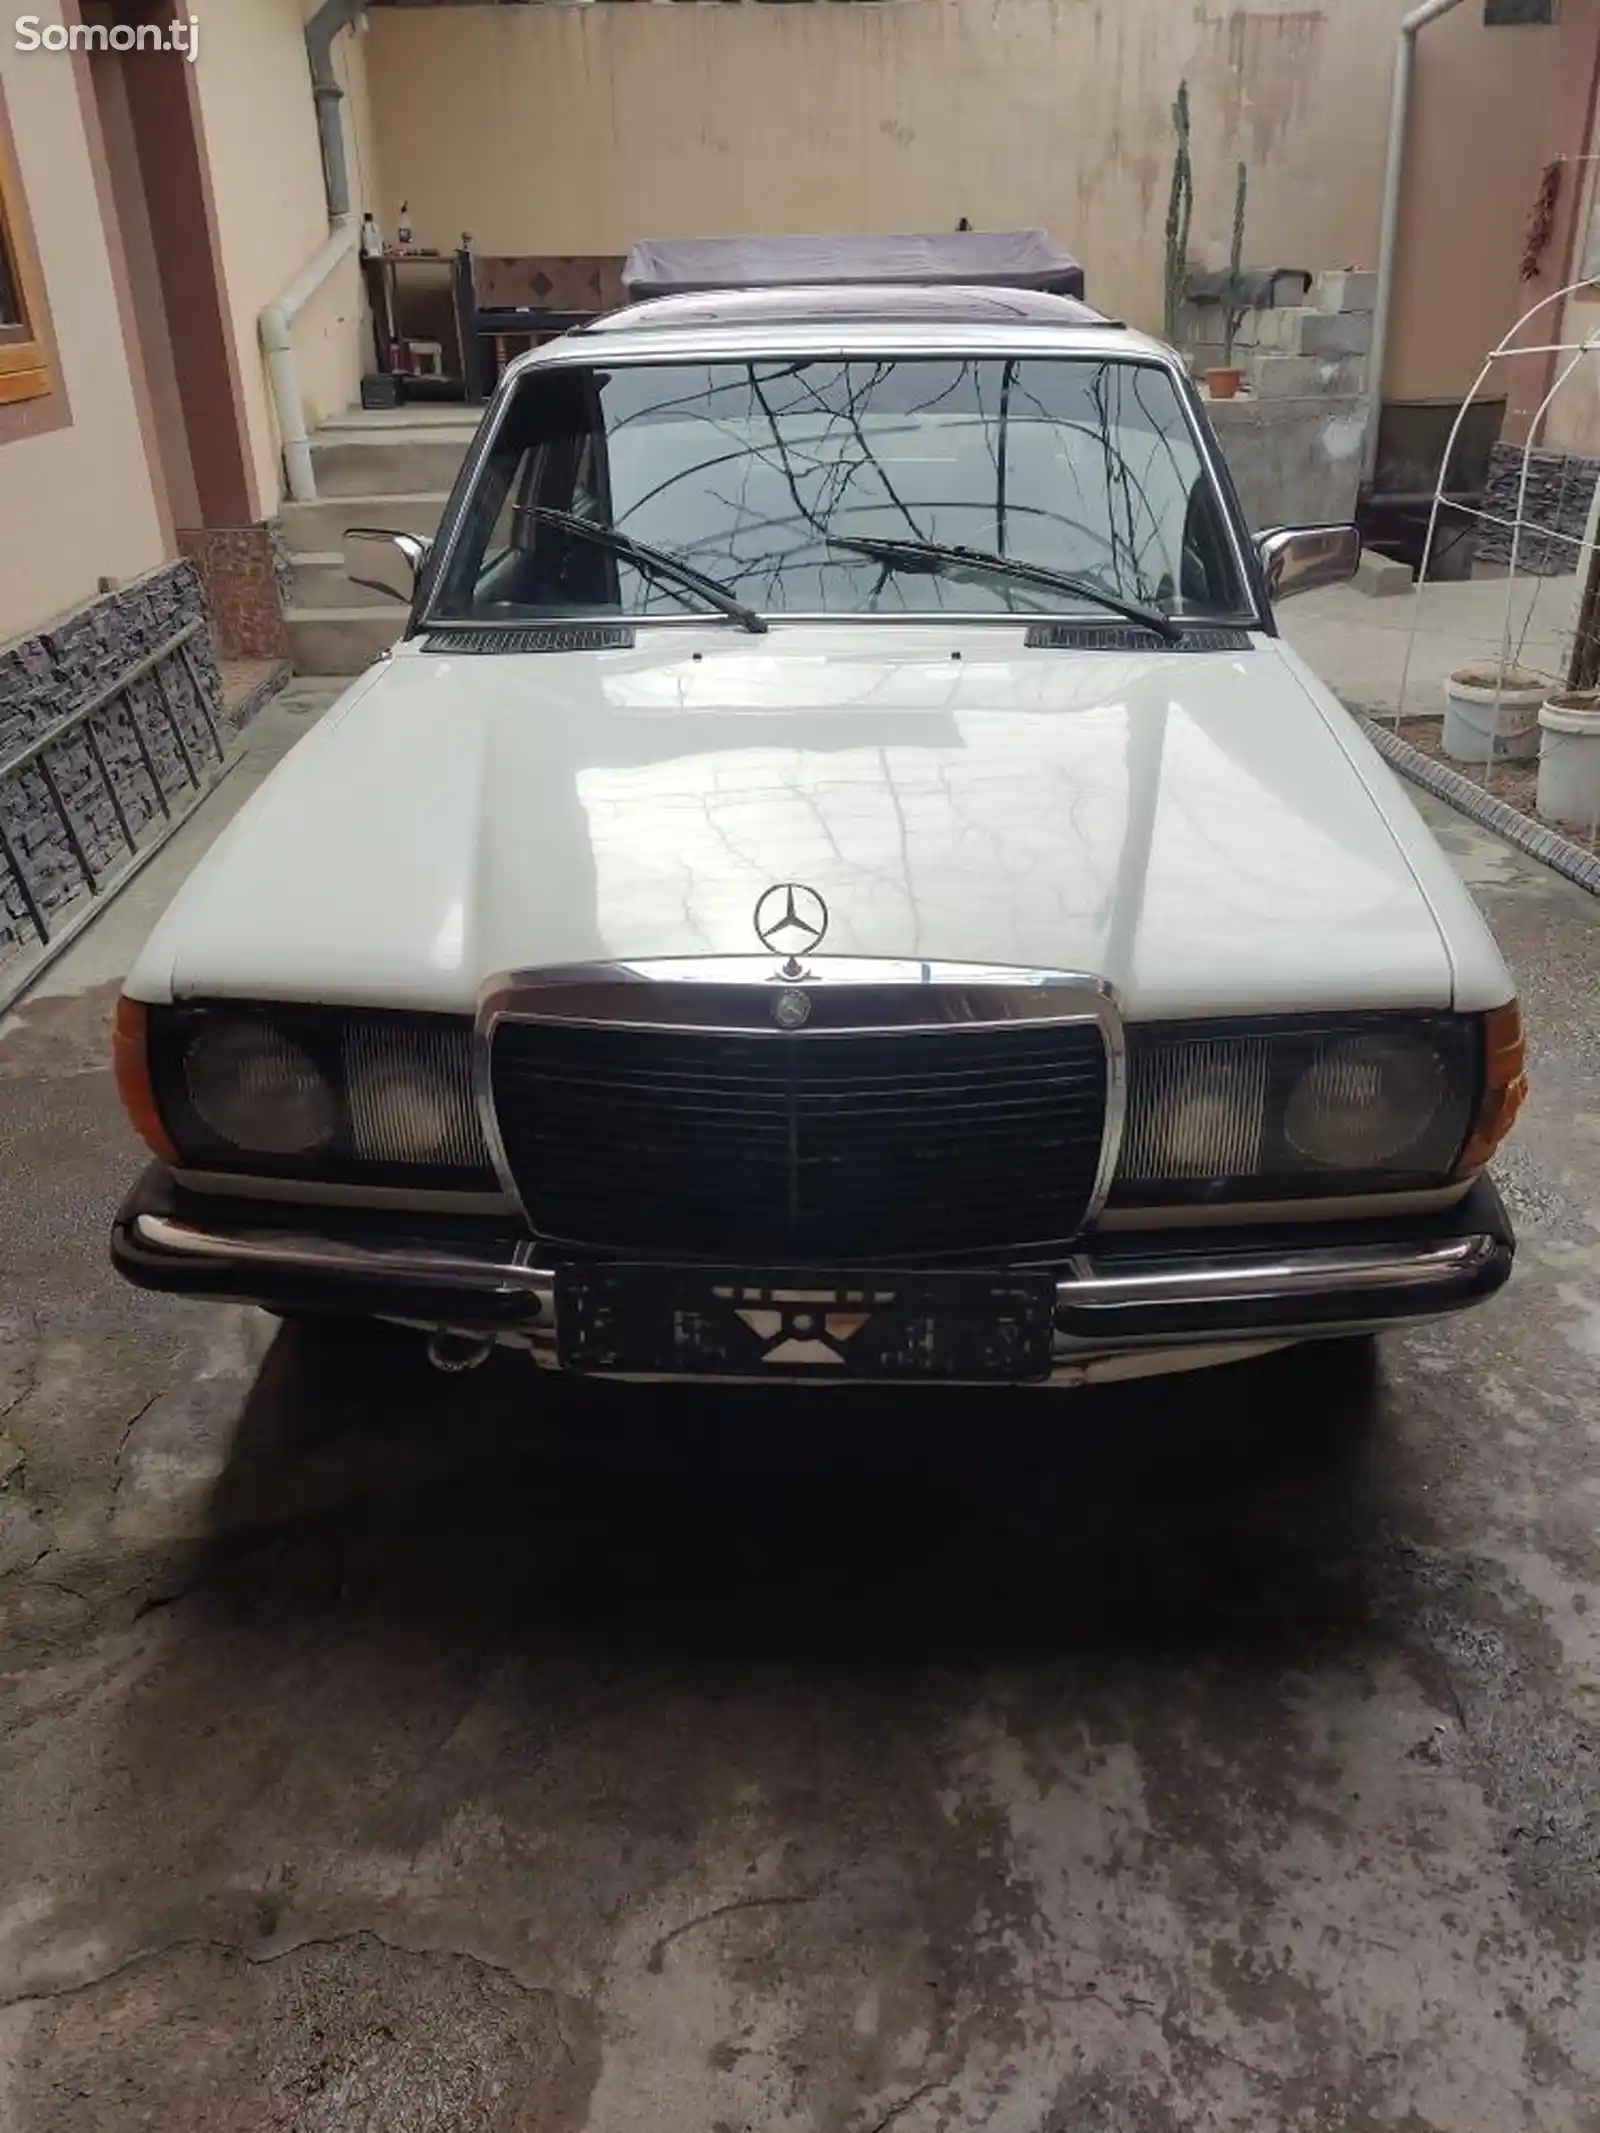 Mercedes-Benz W124, 1982-1